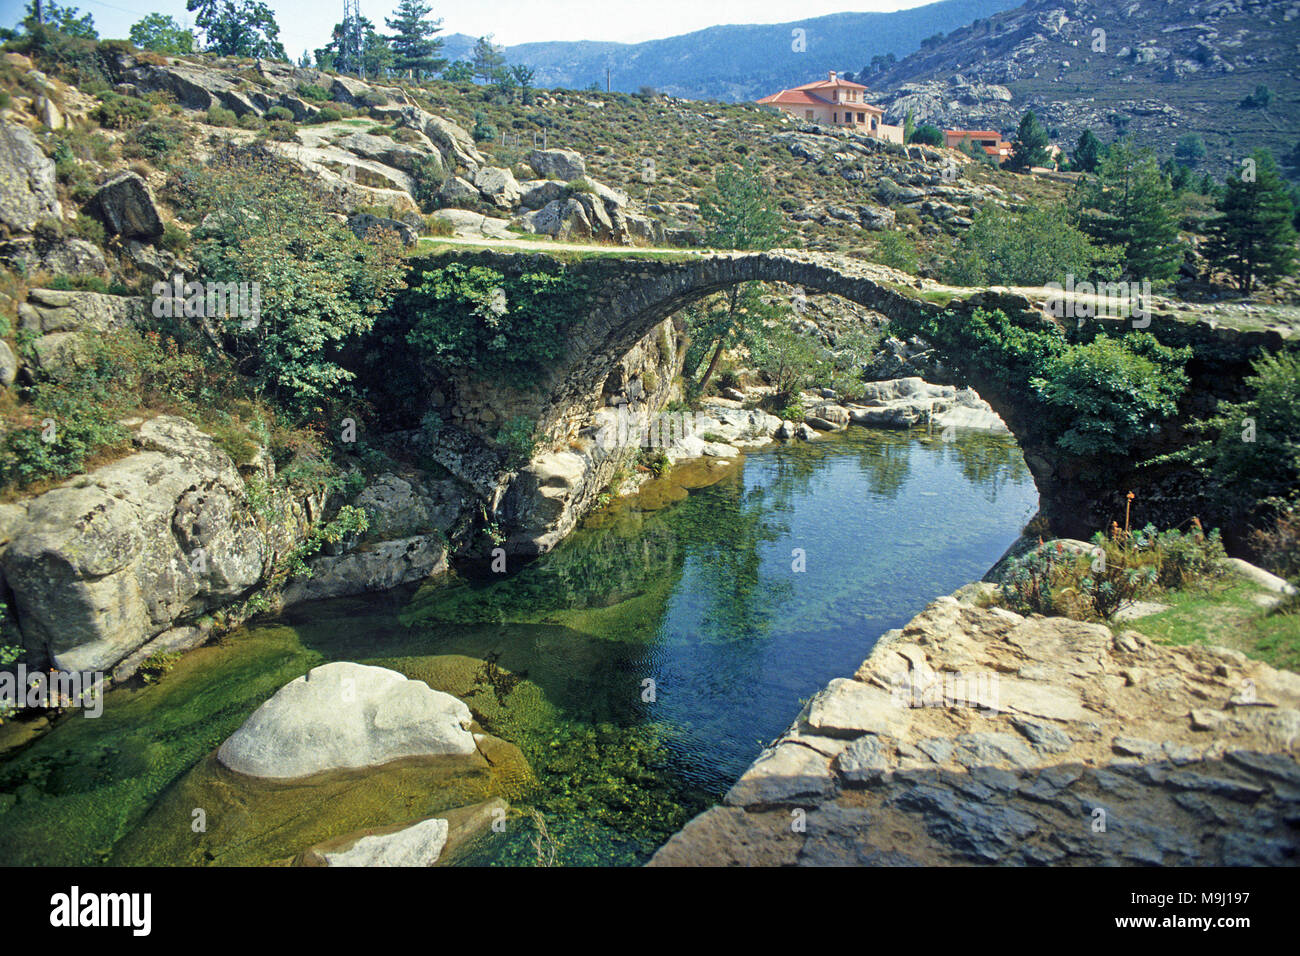 Vieux pont de pierre, à génoise Niolu vallée, Calacuccia, Corse, France, Europe, Méditerranée Banque D'Images